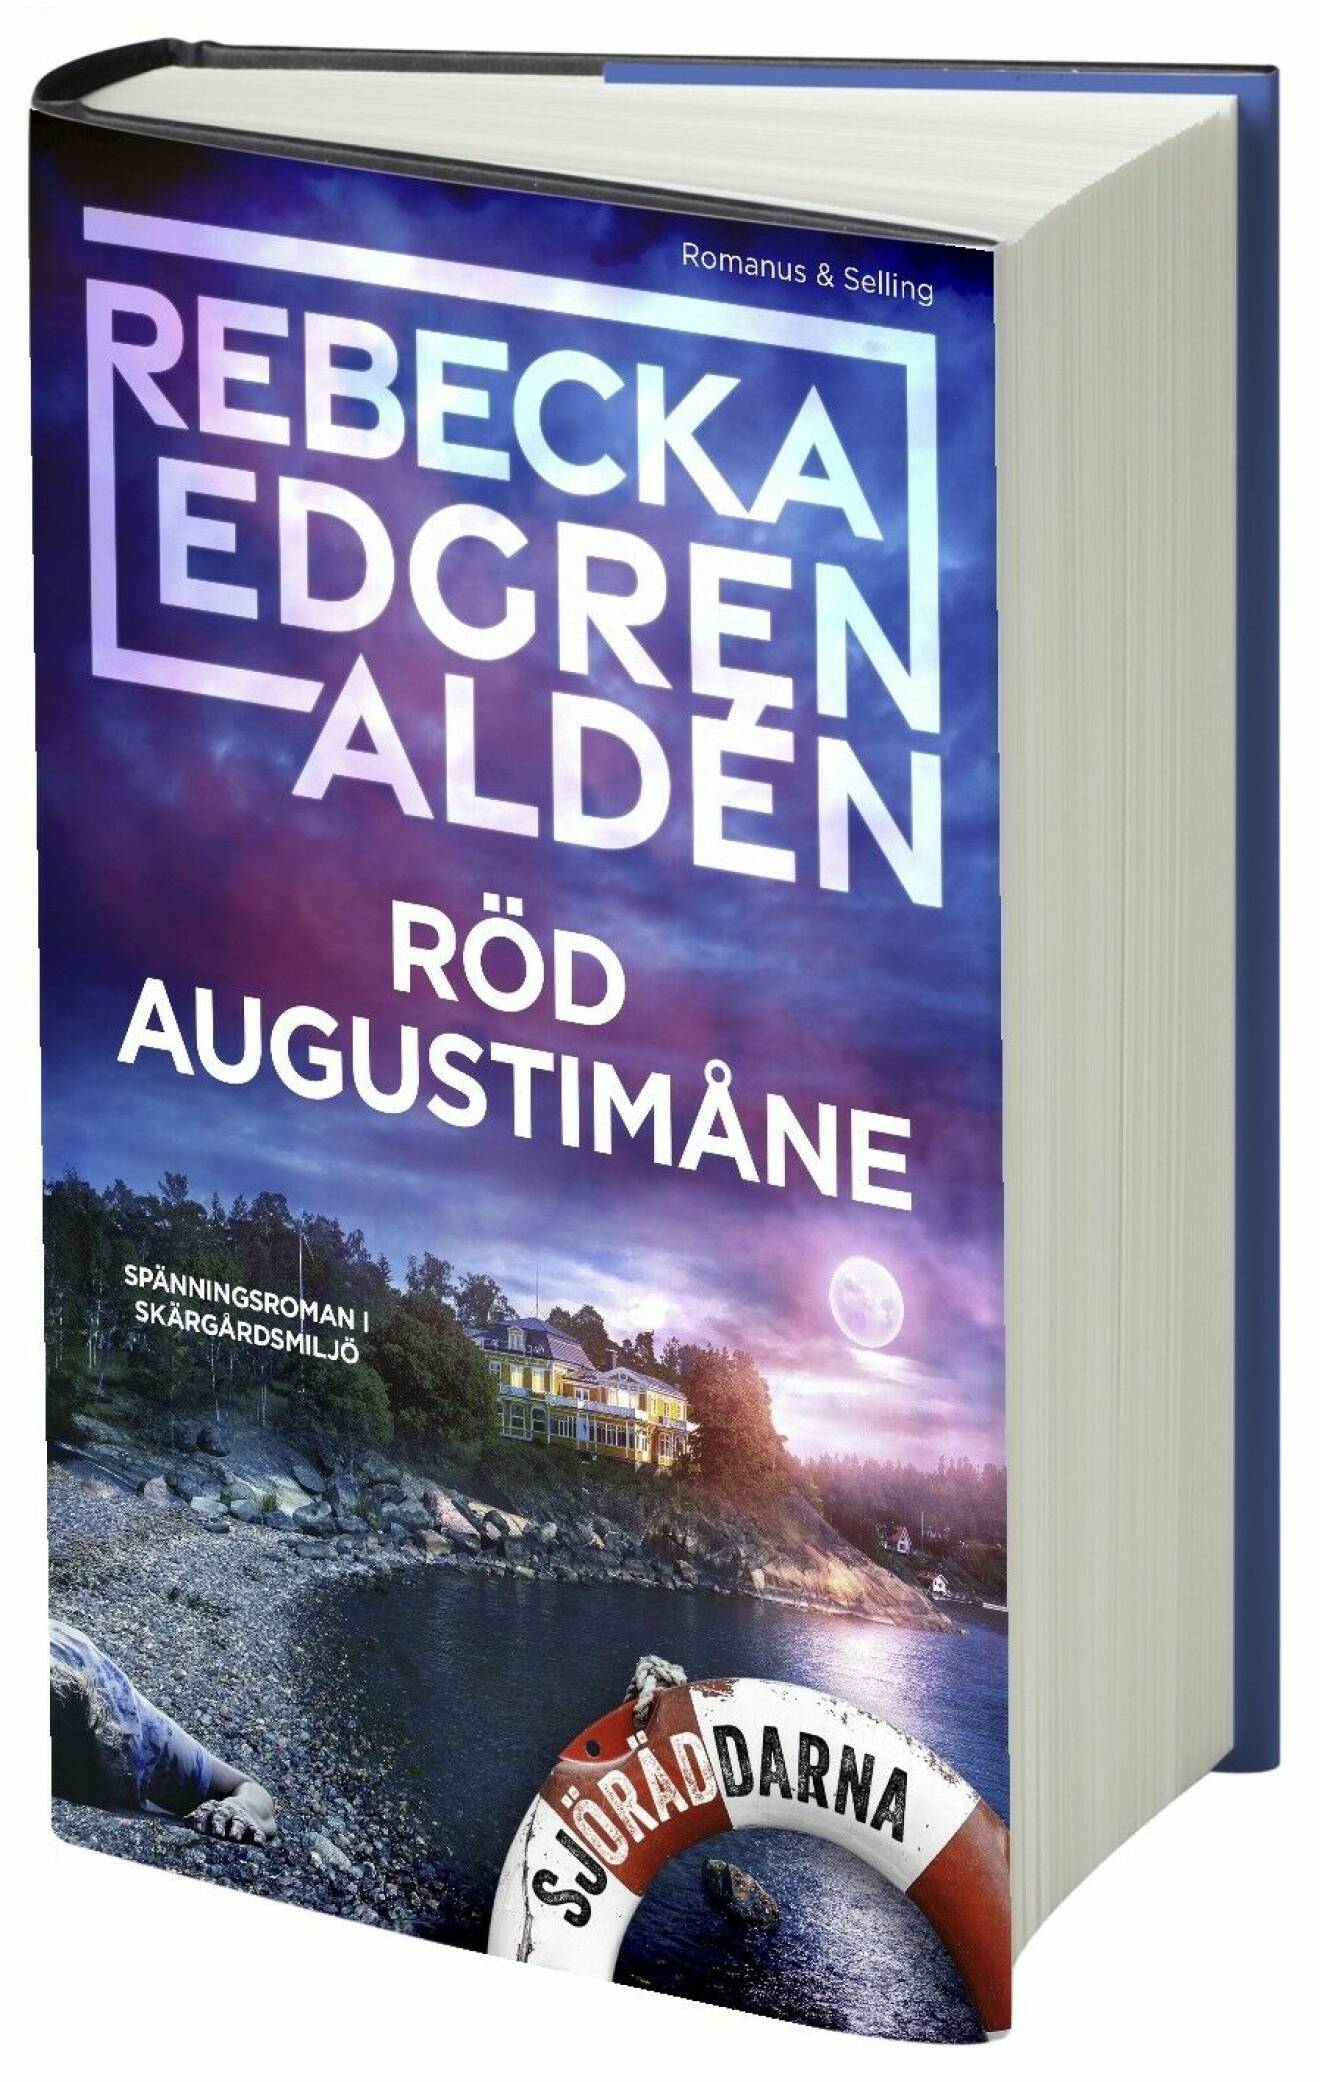 Röd Augustimåne av Rebecka Edgren Aldén (Romanus &amp; Selling).